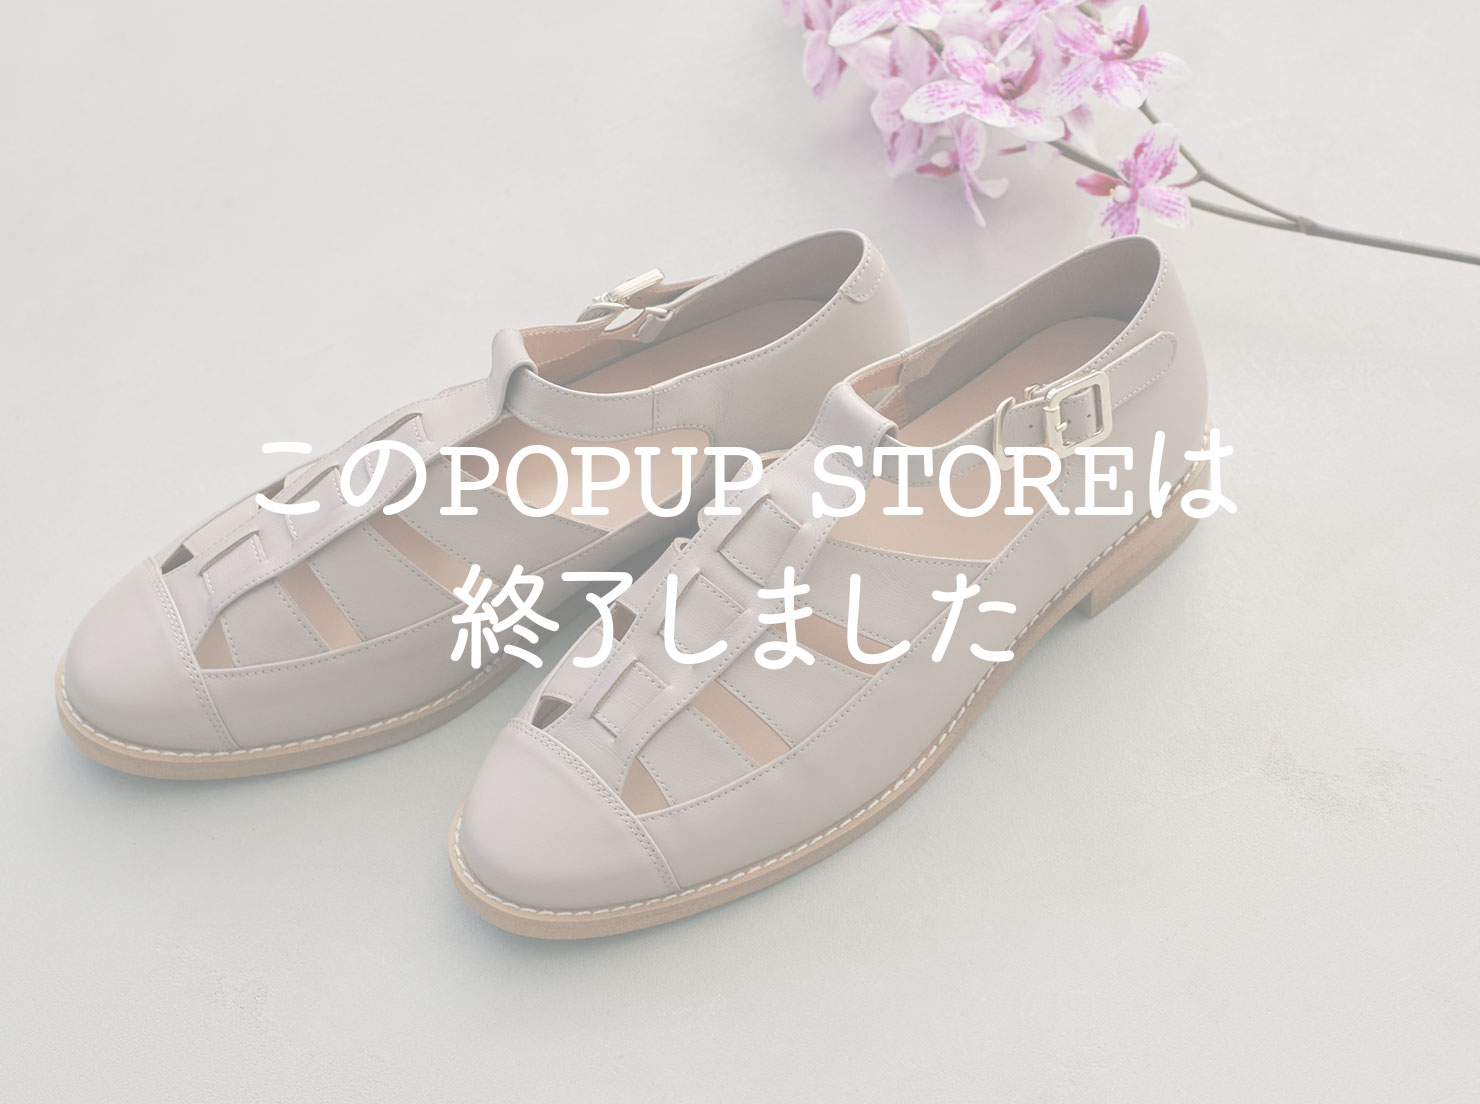 そごう横浜店 POPUP STORE Vol.7(終了しました。)